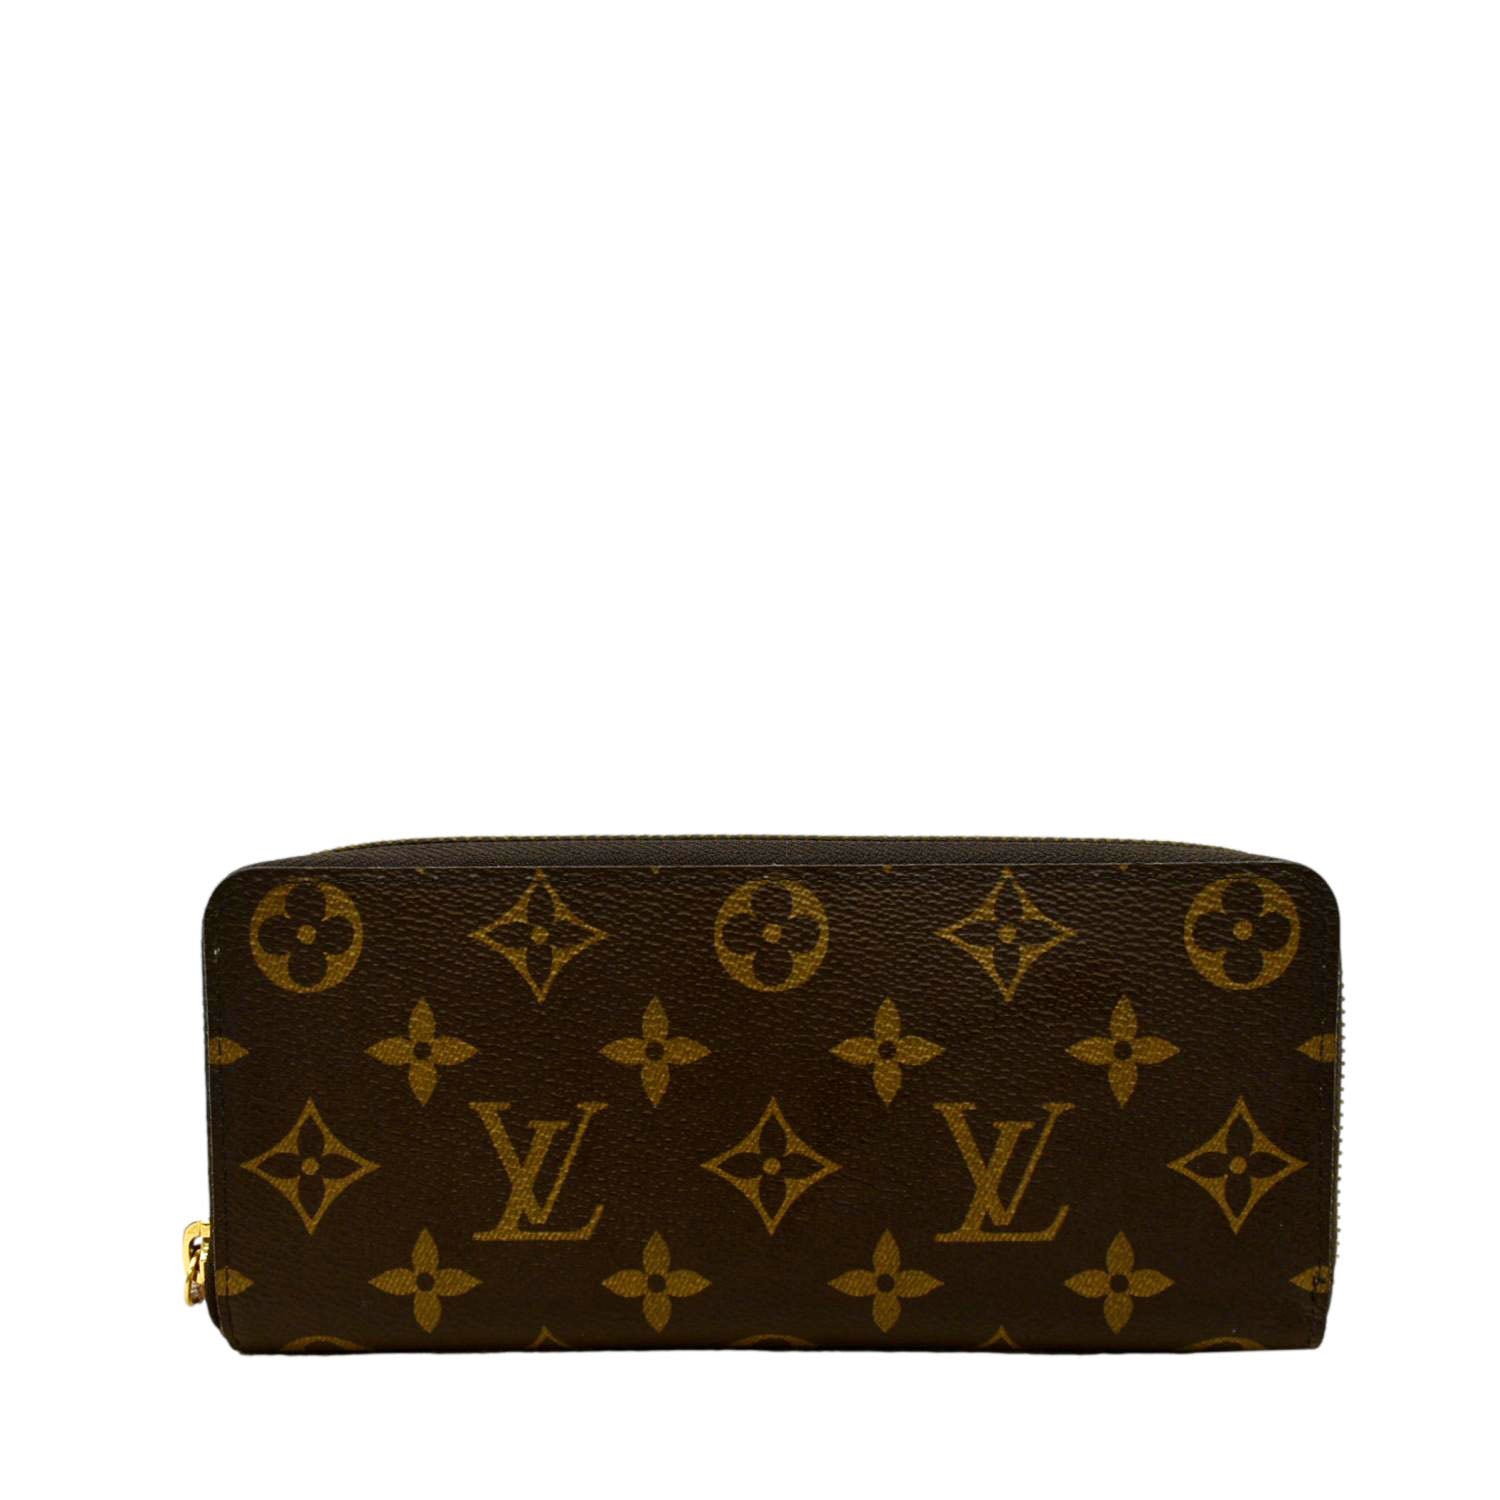 Voir tous les sacs Louis Vuitton Zippy